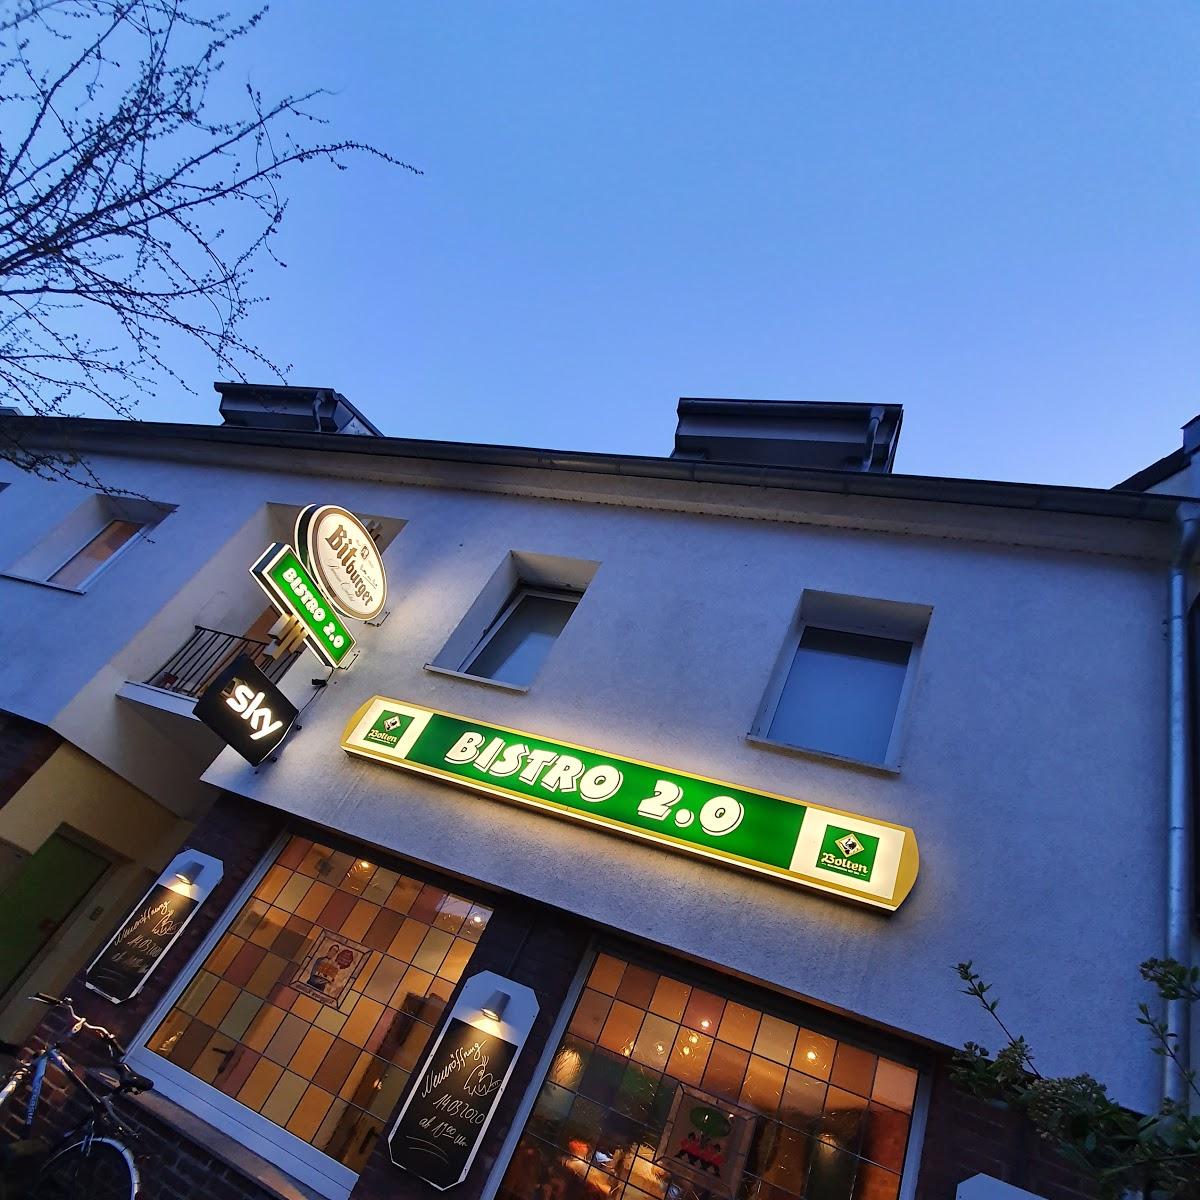 Restaurant "Bistro 2.0" in Willich